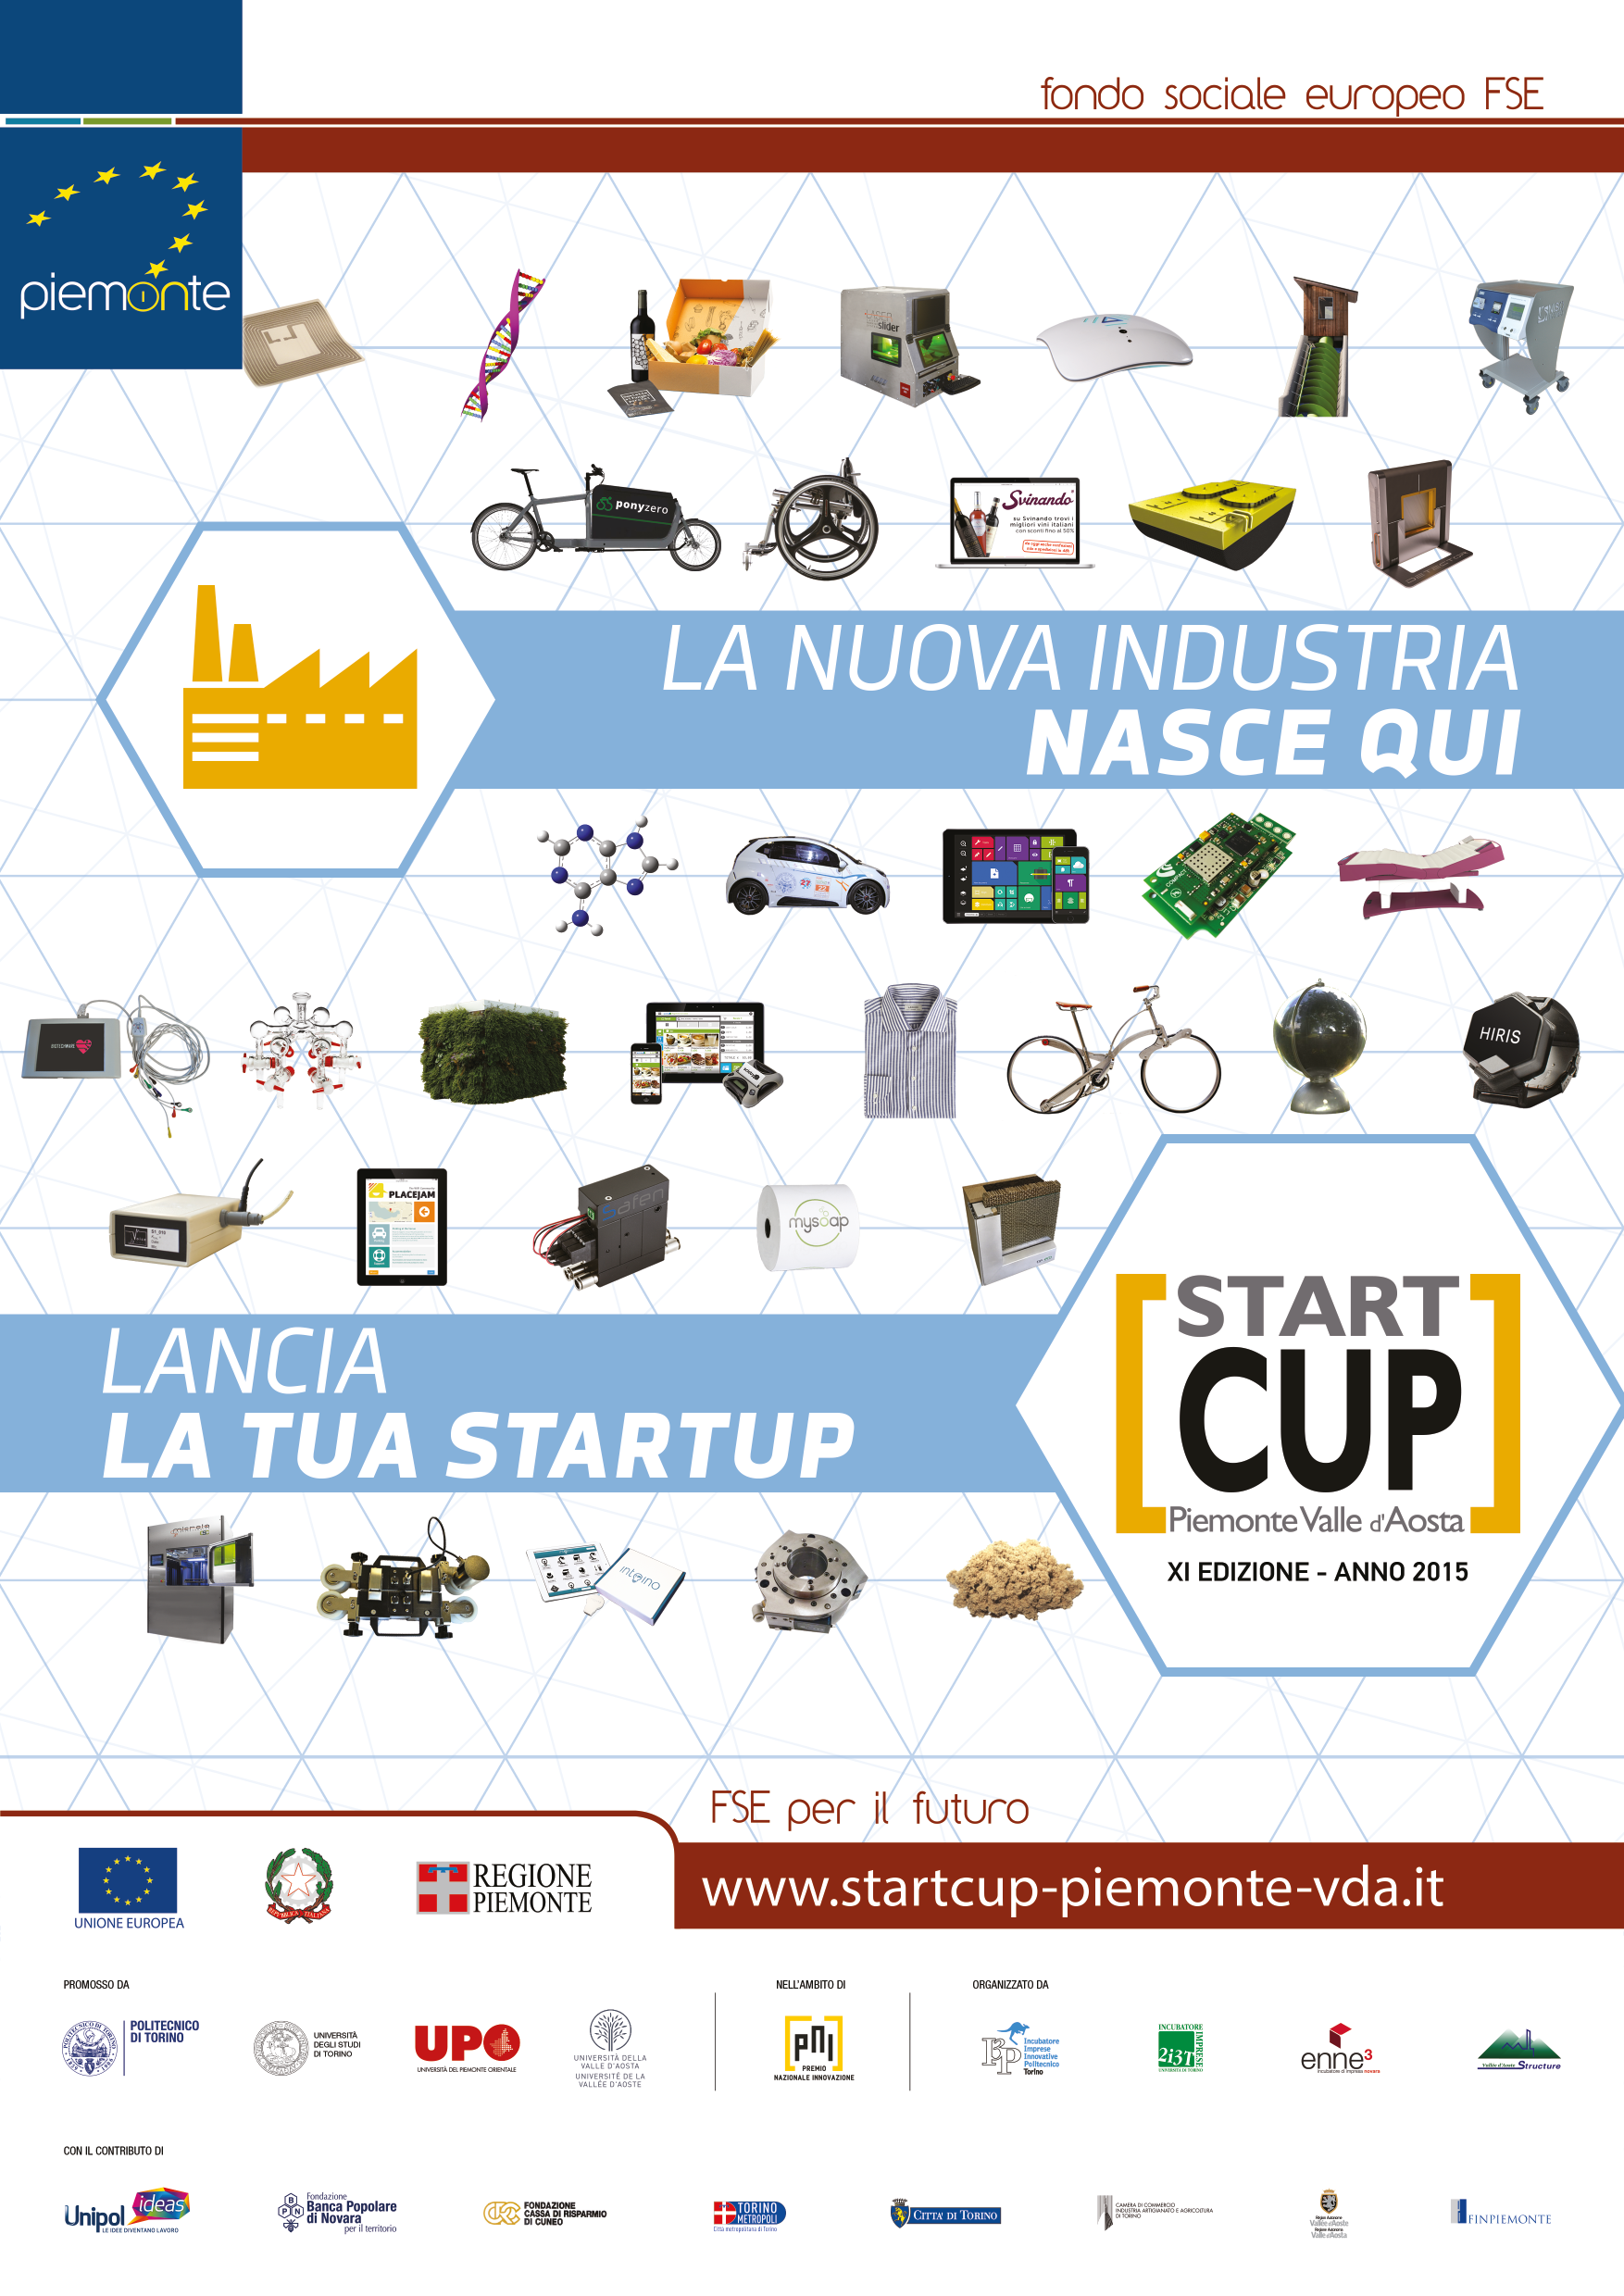 Il 29 maggio scadono i termini per la presentazione dei progetti per la Start Cup Piemonte e Valle d’Aosta 2015